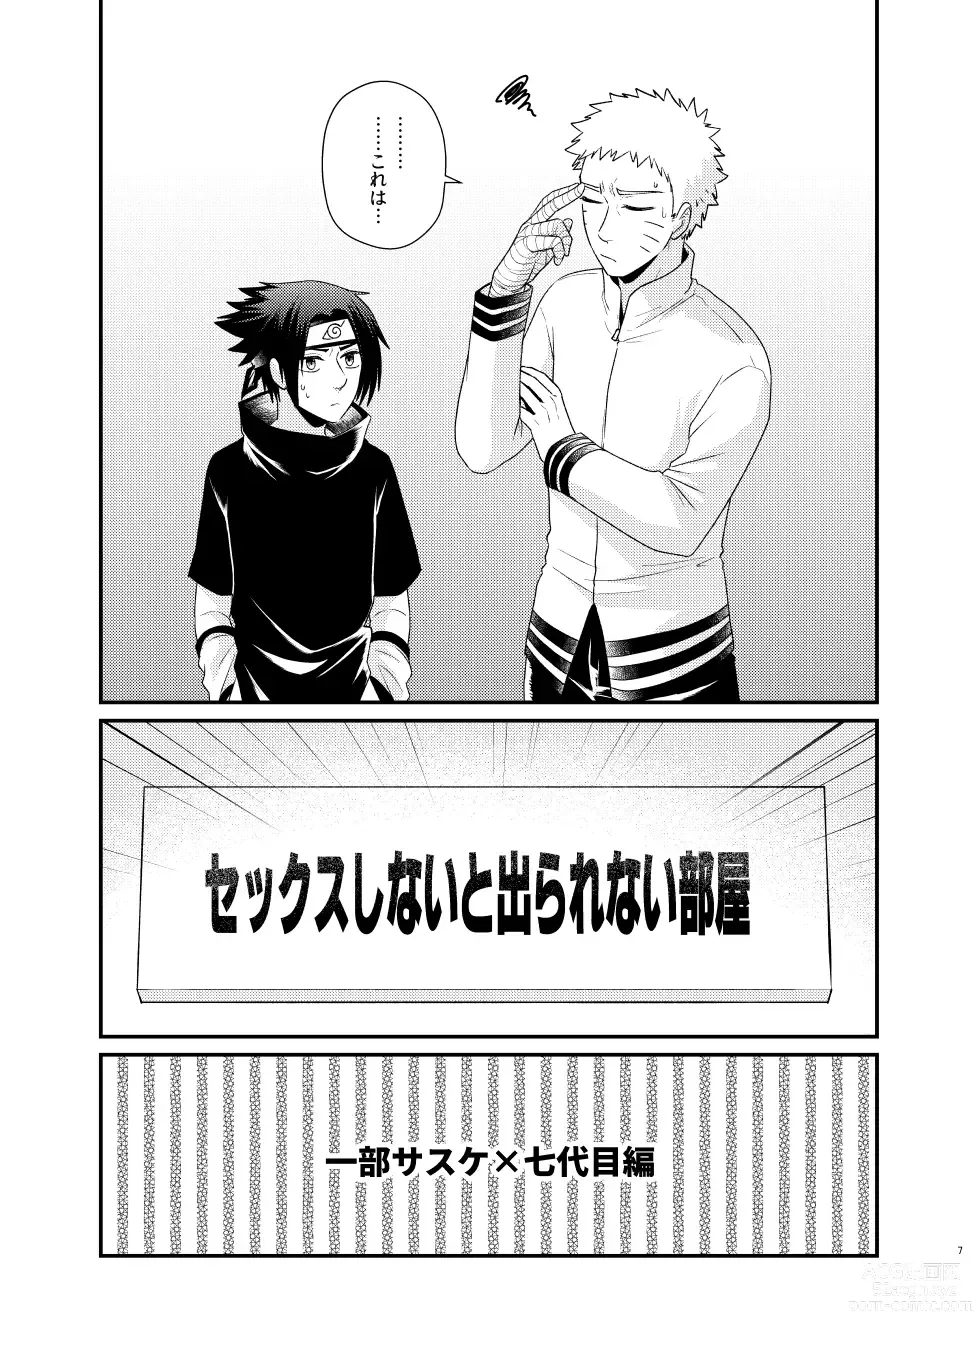 Page 4 of doujinshi Gochamaze 37 ~Rei no Heya ni Tojikomete Okimashita~